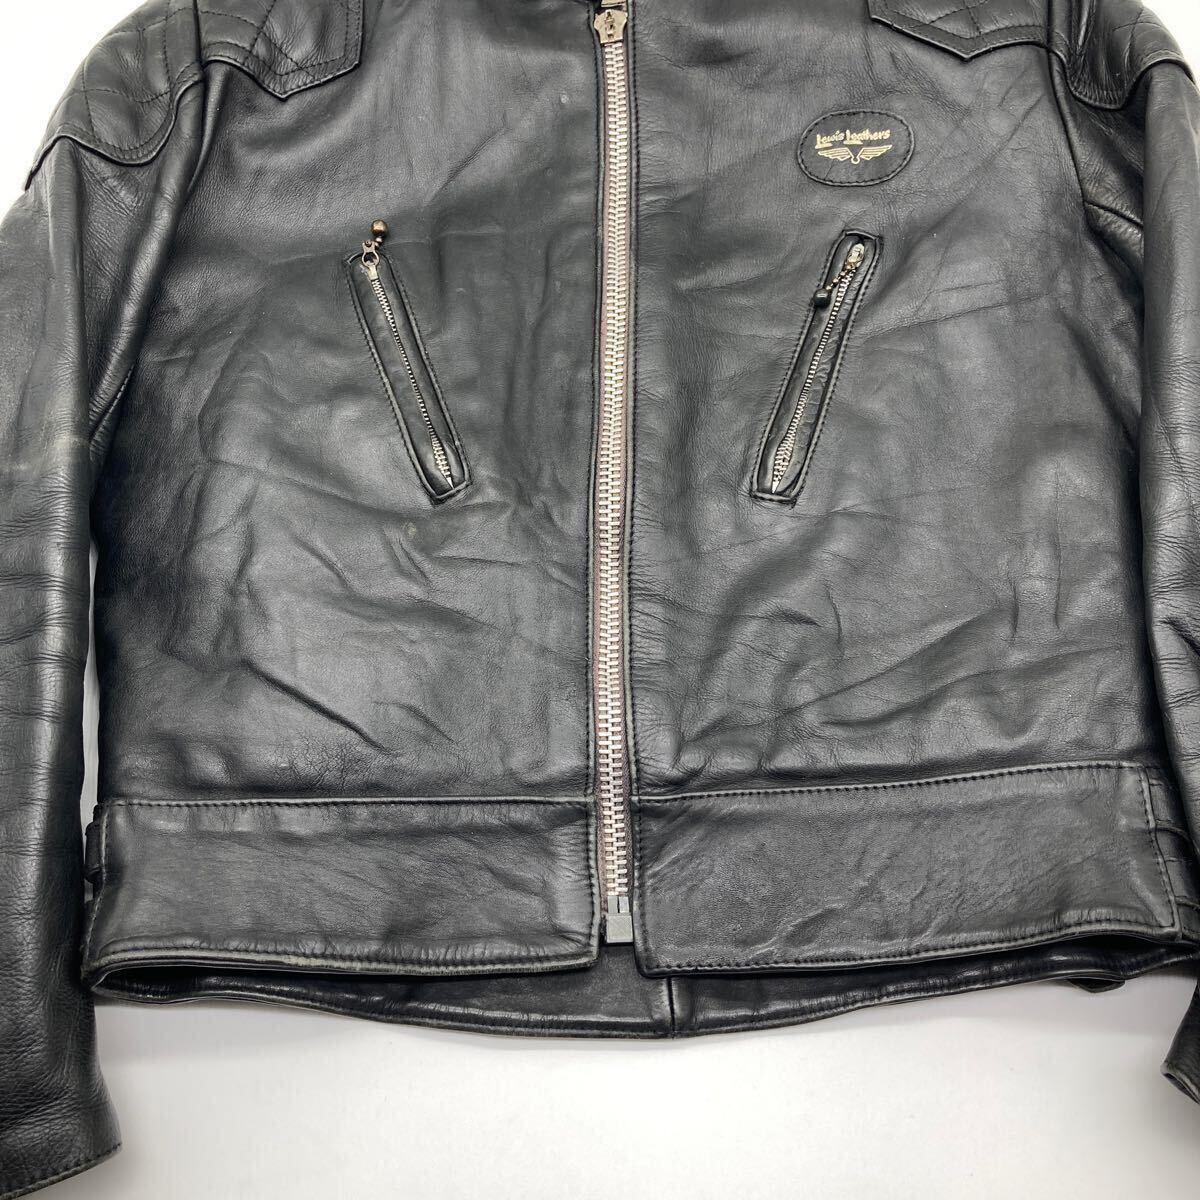 当時物 Lewis leather ルイスレザー 70s スーパーファントム ライダースジャケット キルティング ヴィンテージ REAL HIDE (38.40程度)_画像5